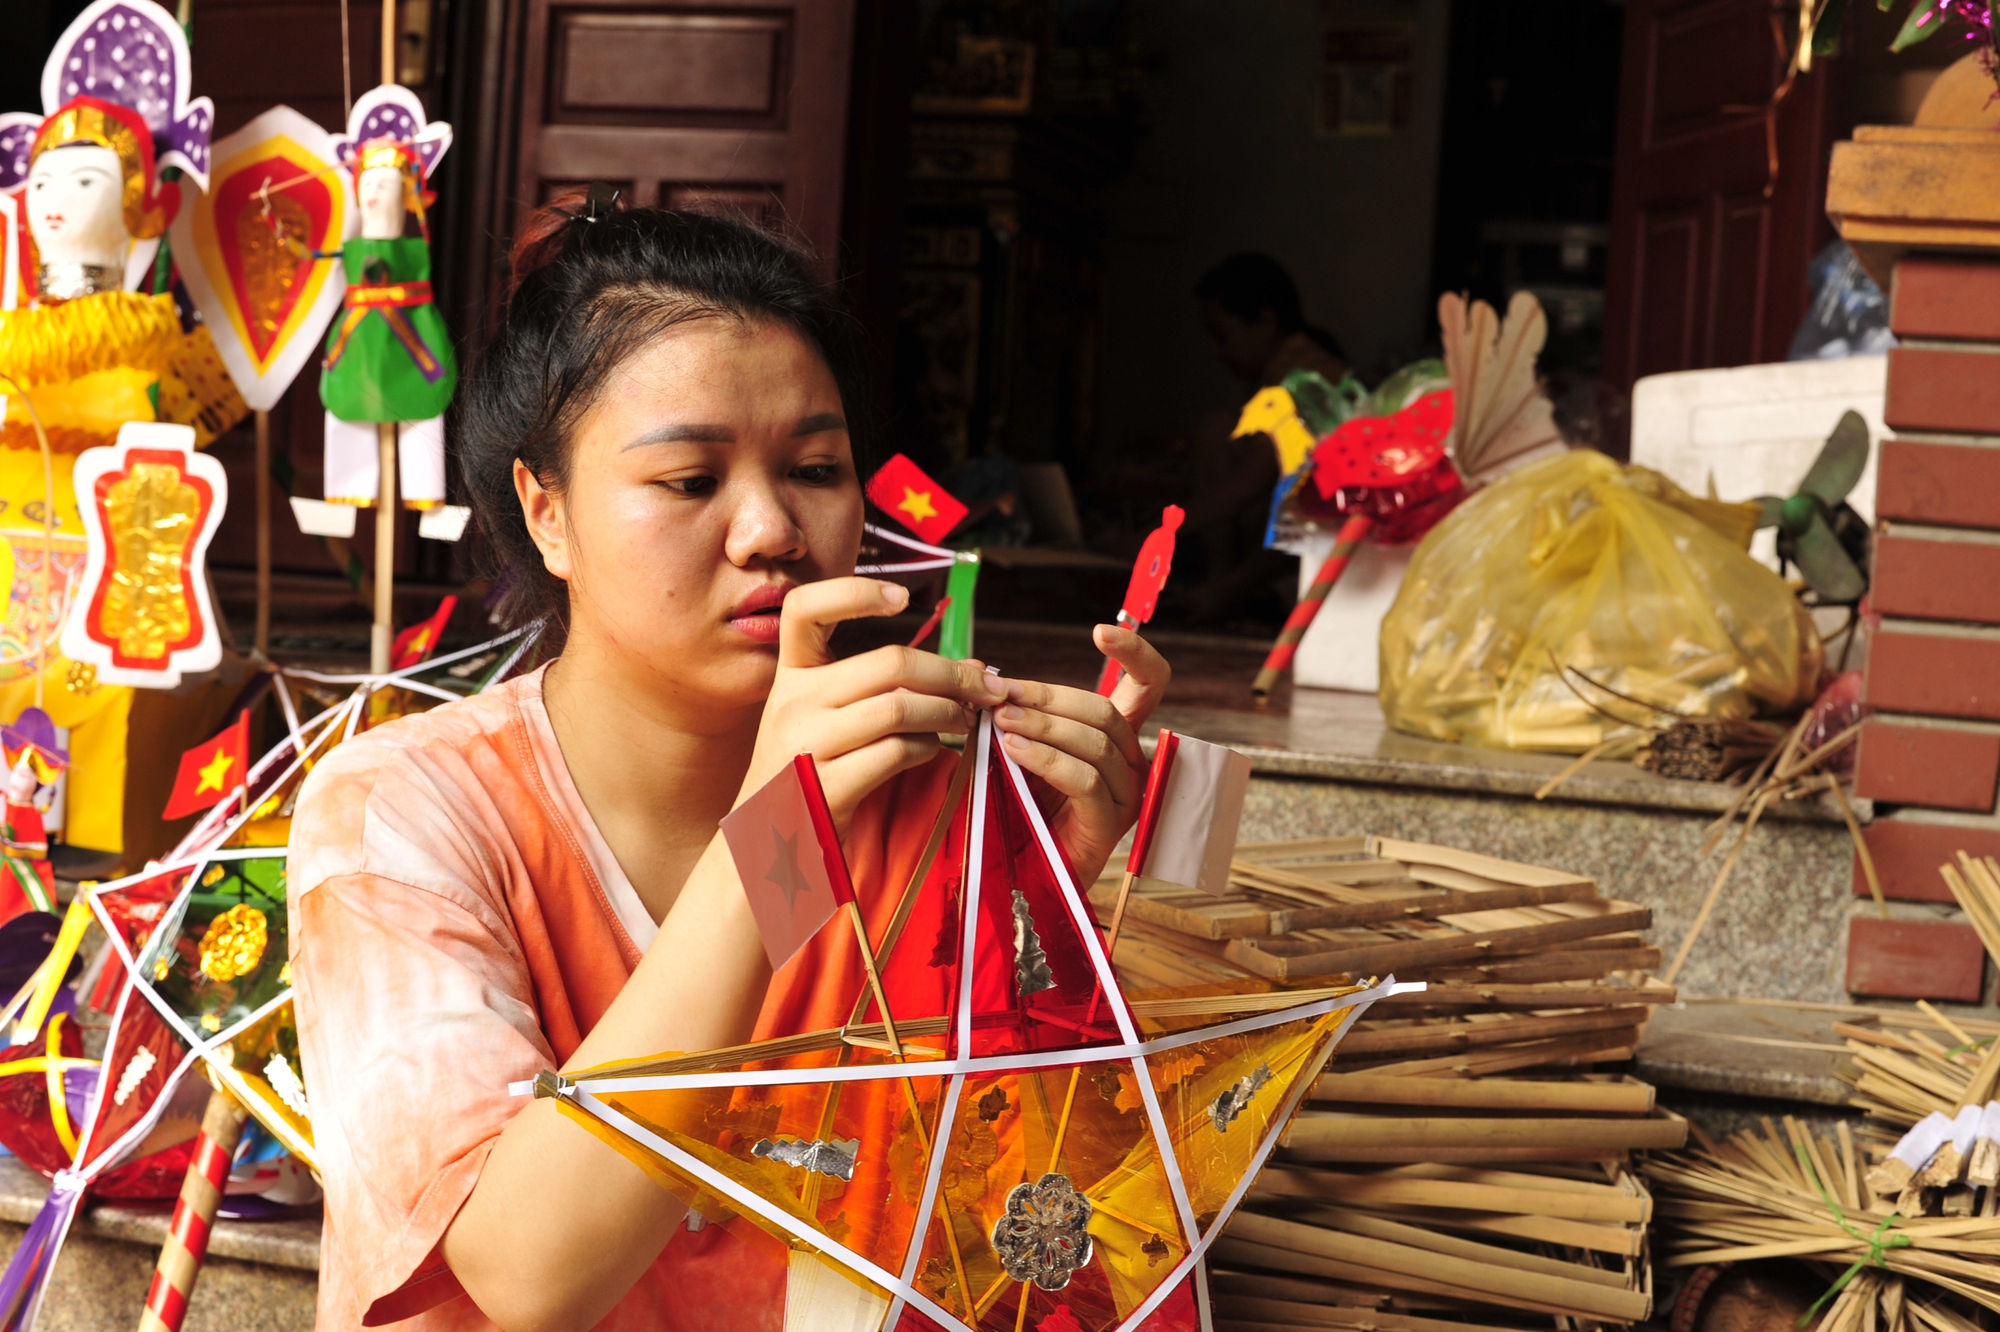 Con gái nghệ nhân Nguyễn Thị Tuyến đang tiếp nối nghề truyền thống từ gia đình